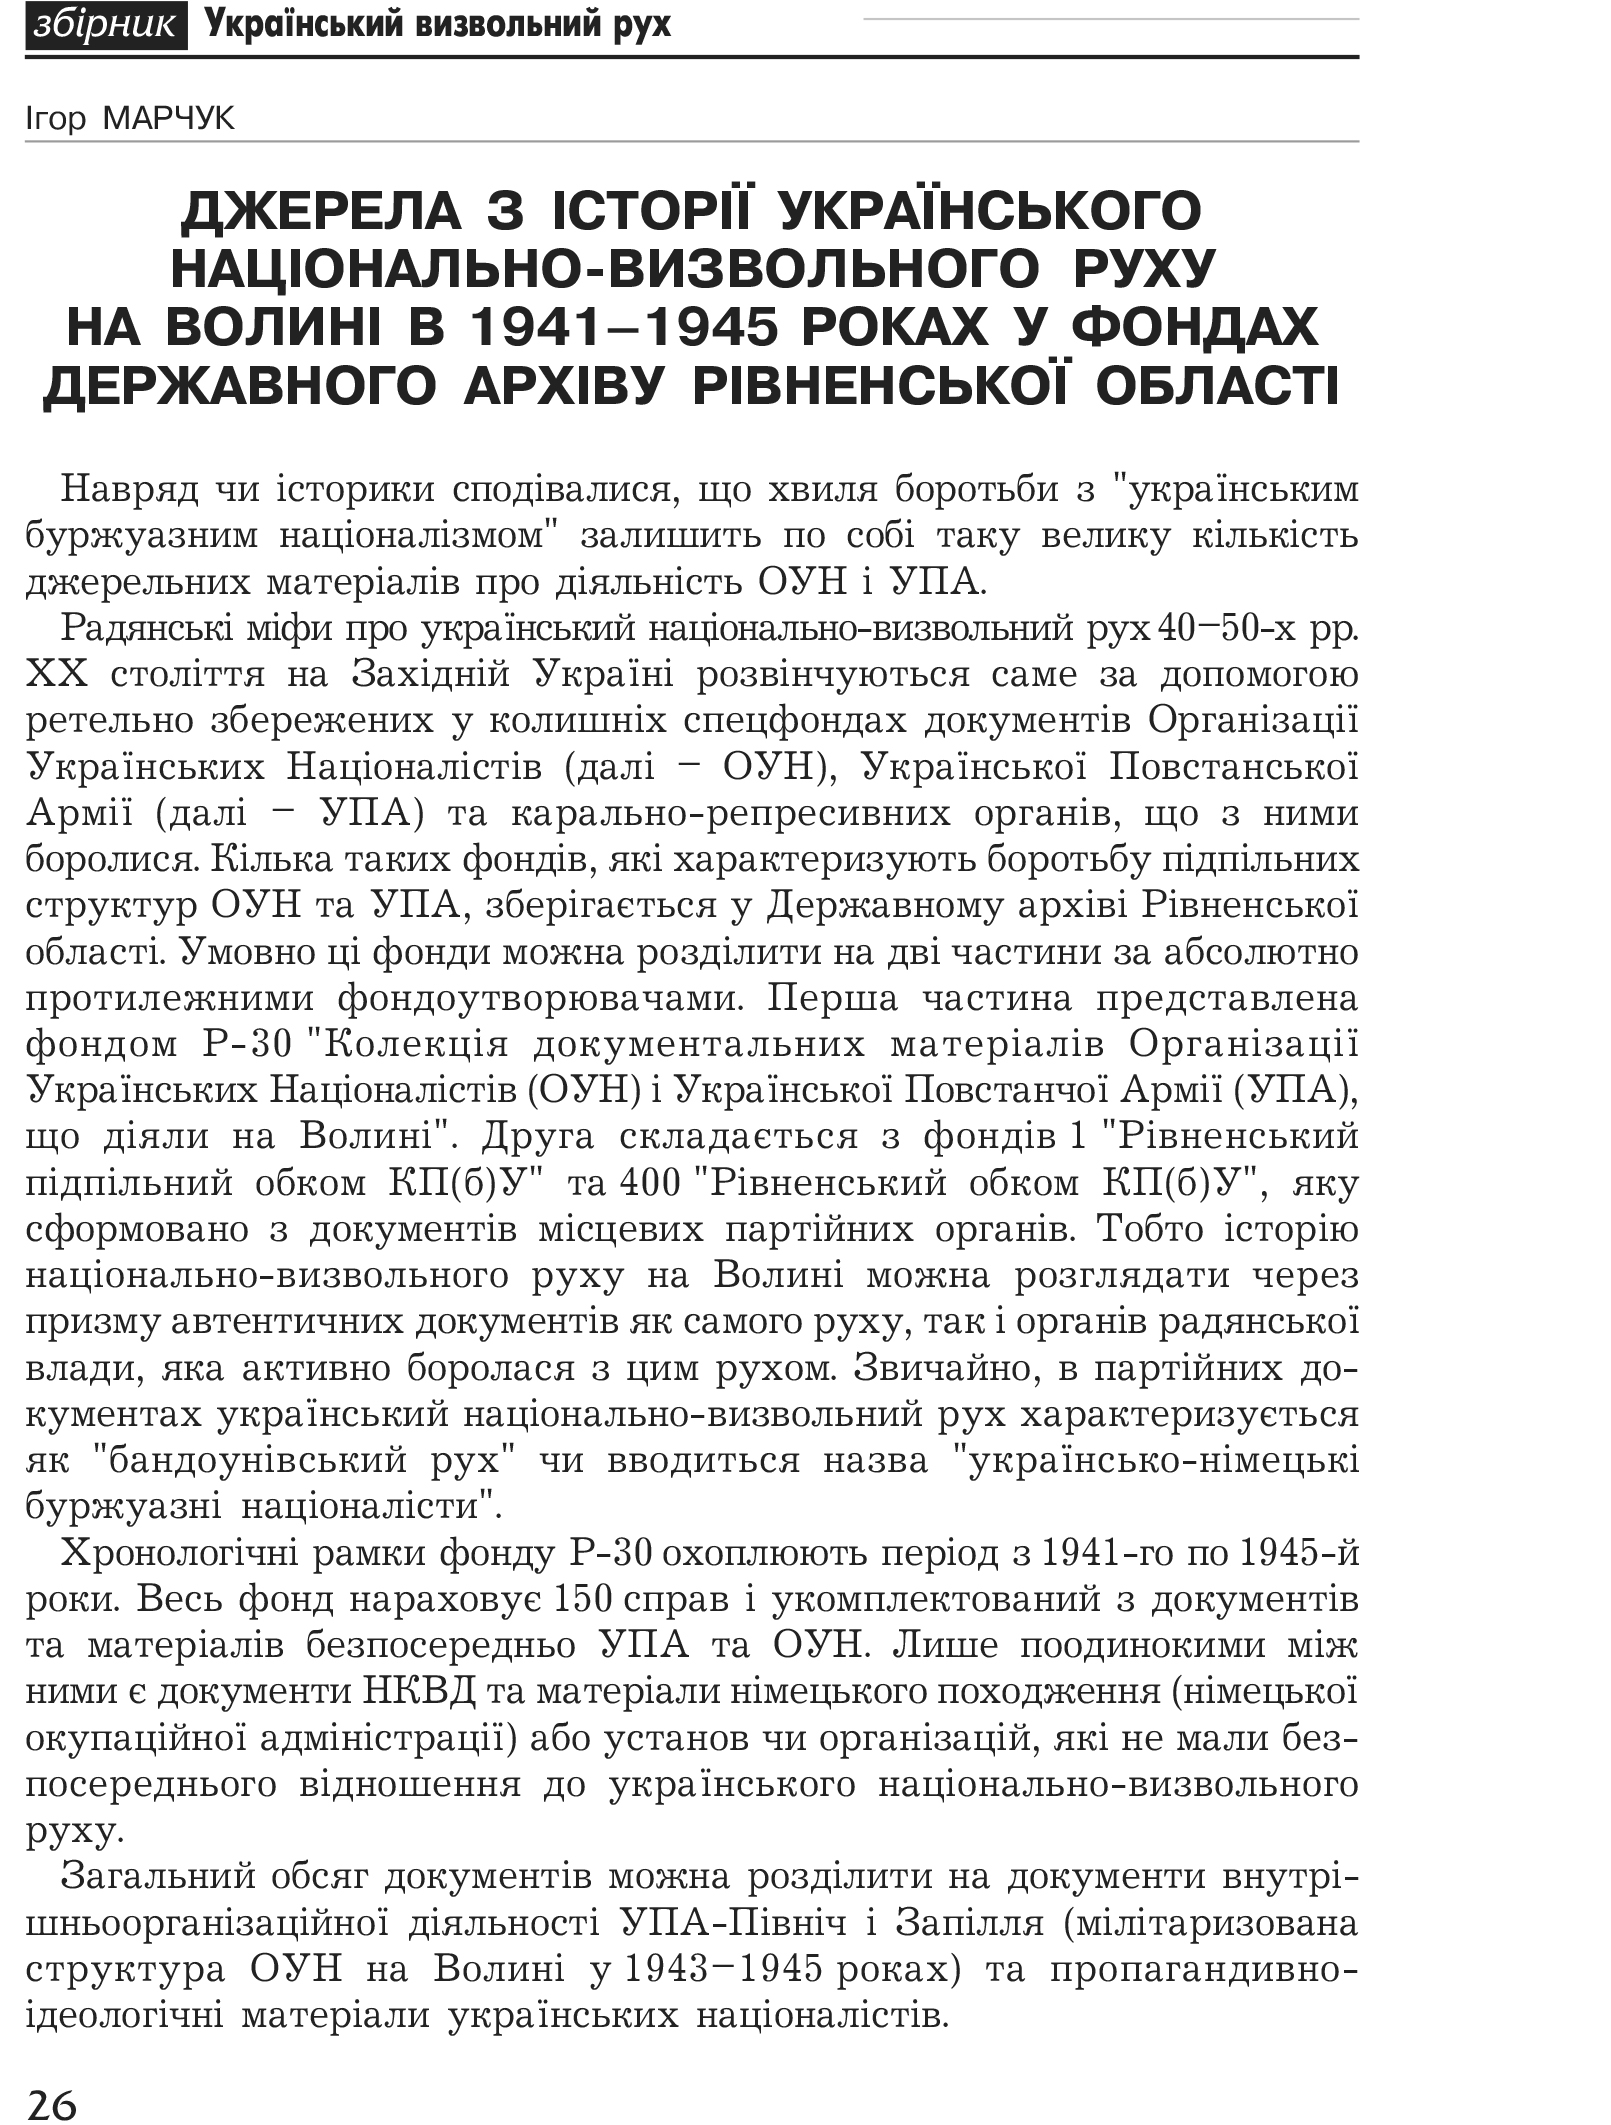 Український визвольний рух №1, ст. 26 - 33